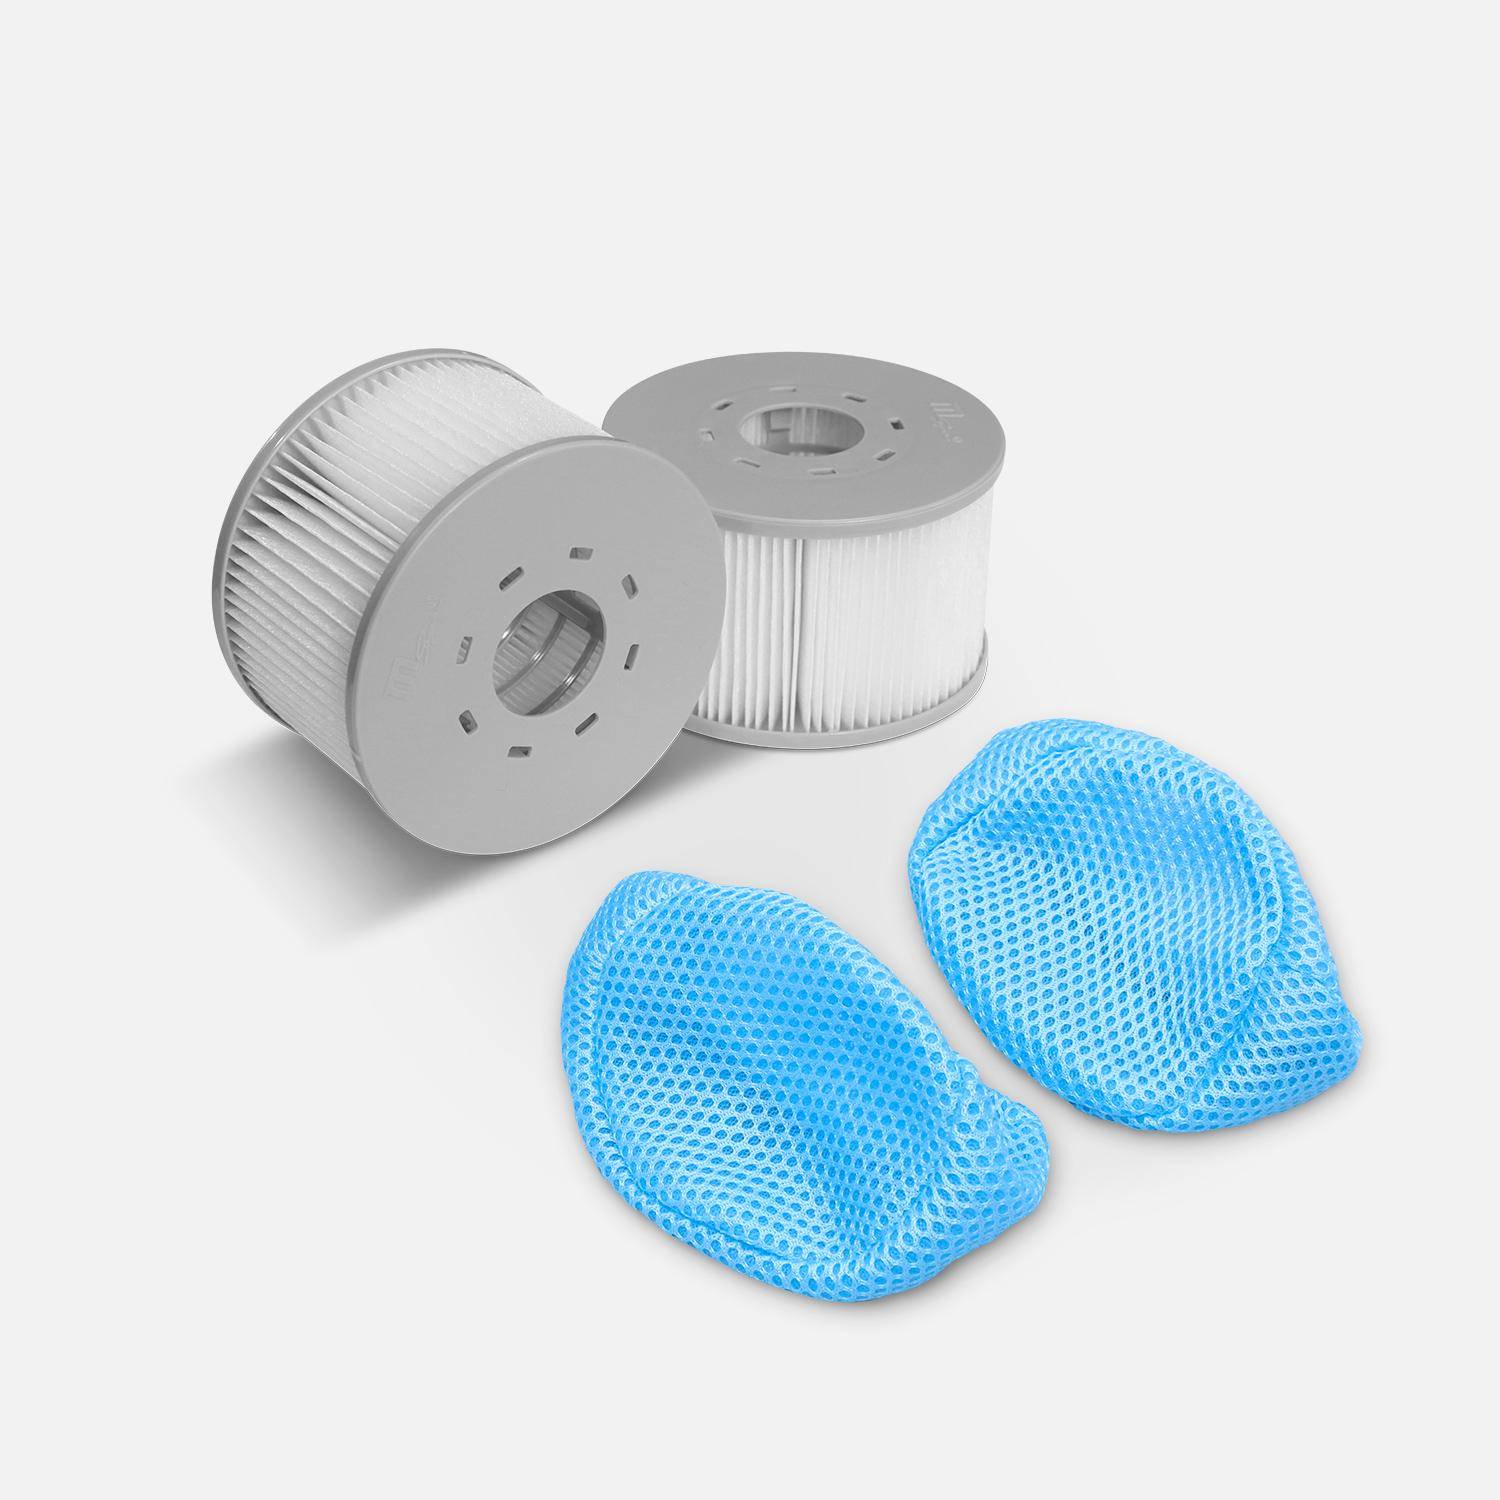 Juego de 2 filtros con redes para spas hinchables MSPA V2, Ø108cm - 2 cartuchos de filtro de recambio para spas hinchables MSPA + 2 redes de protección para spa 2020,sweeek,Photo1